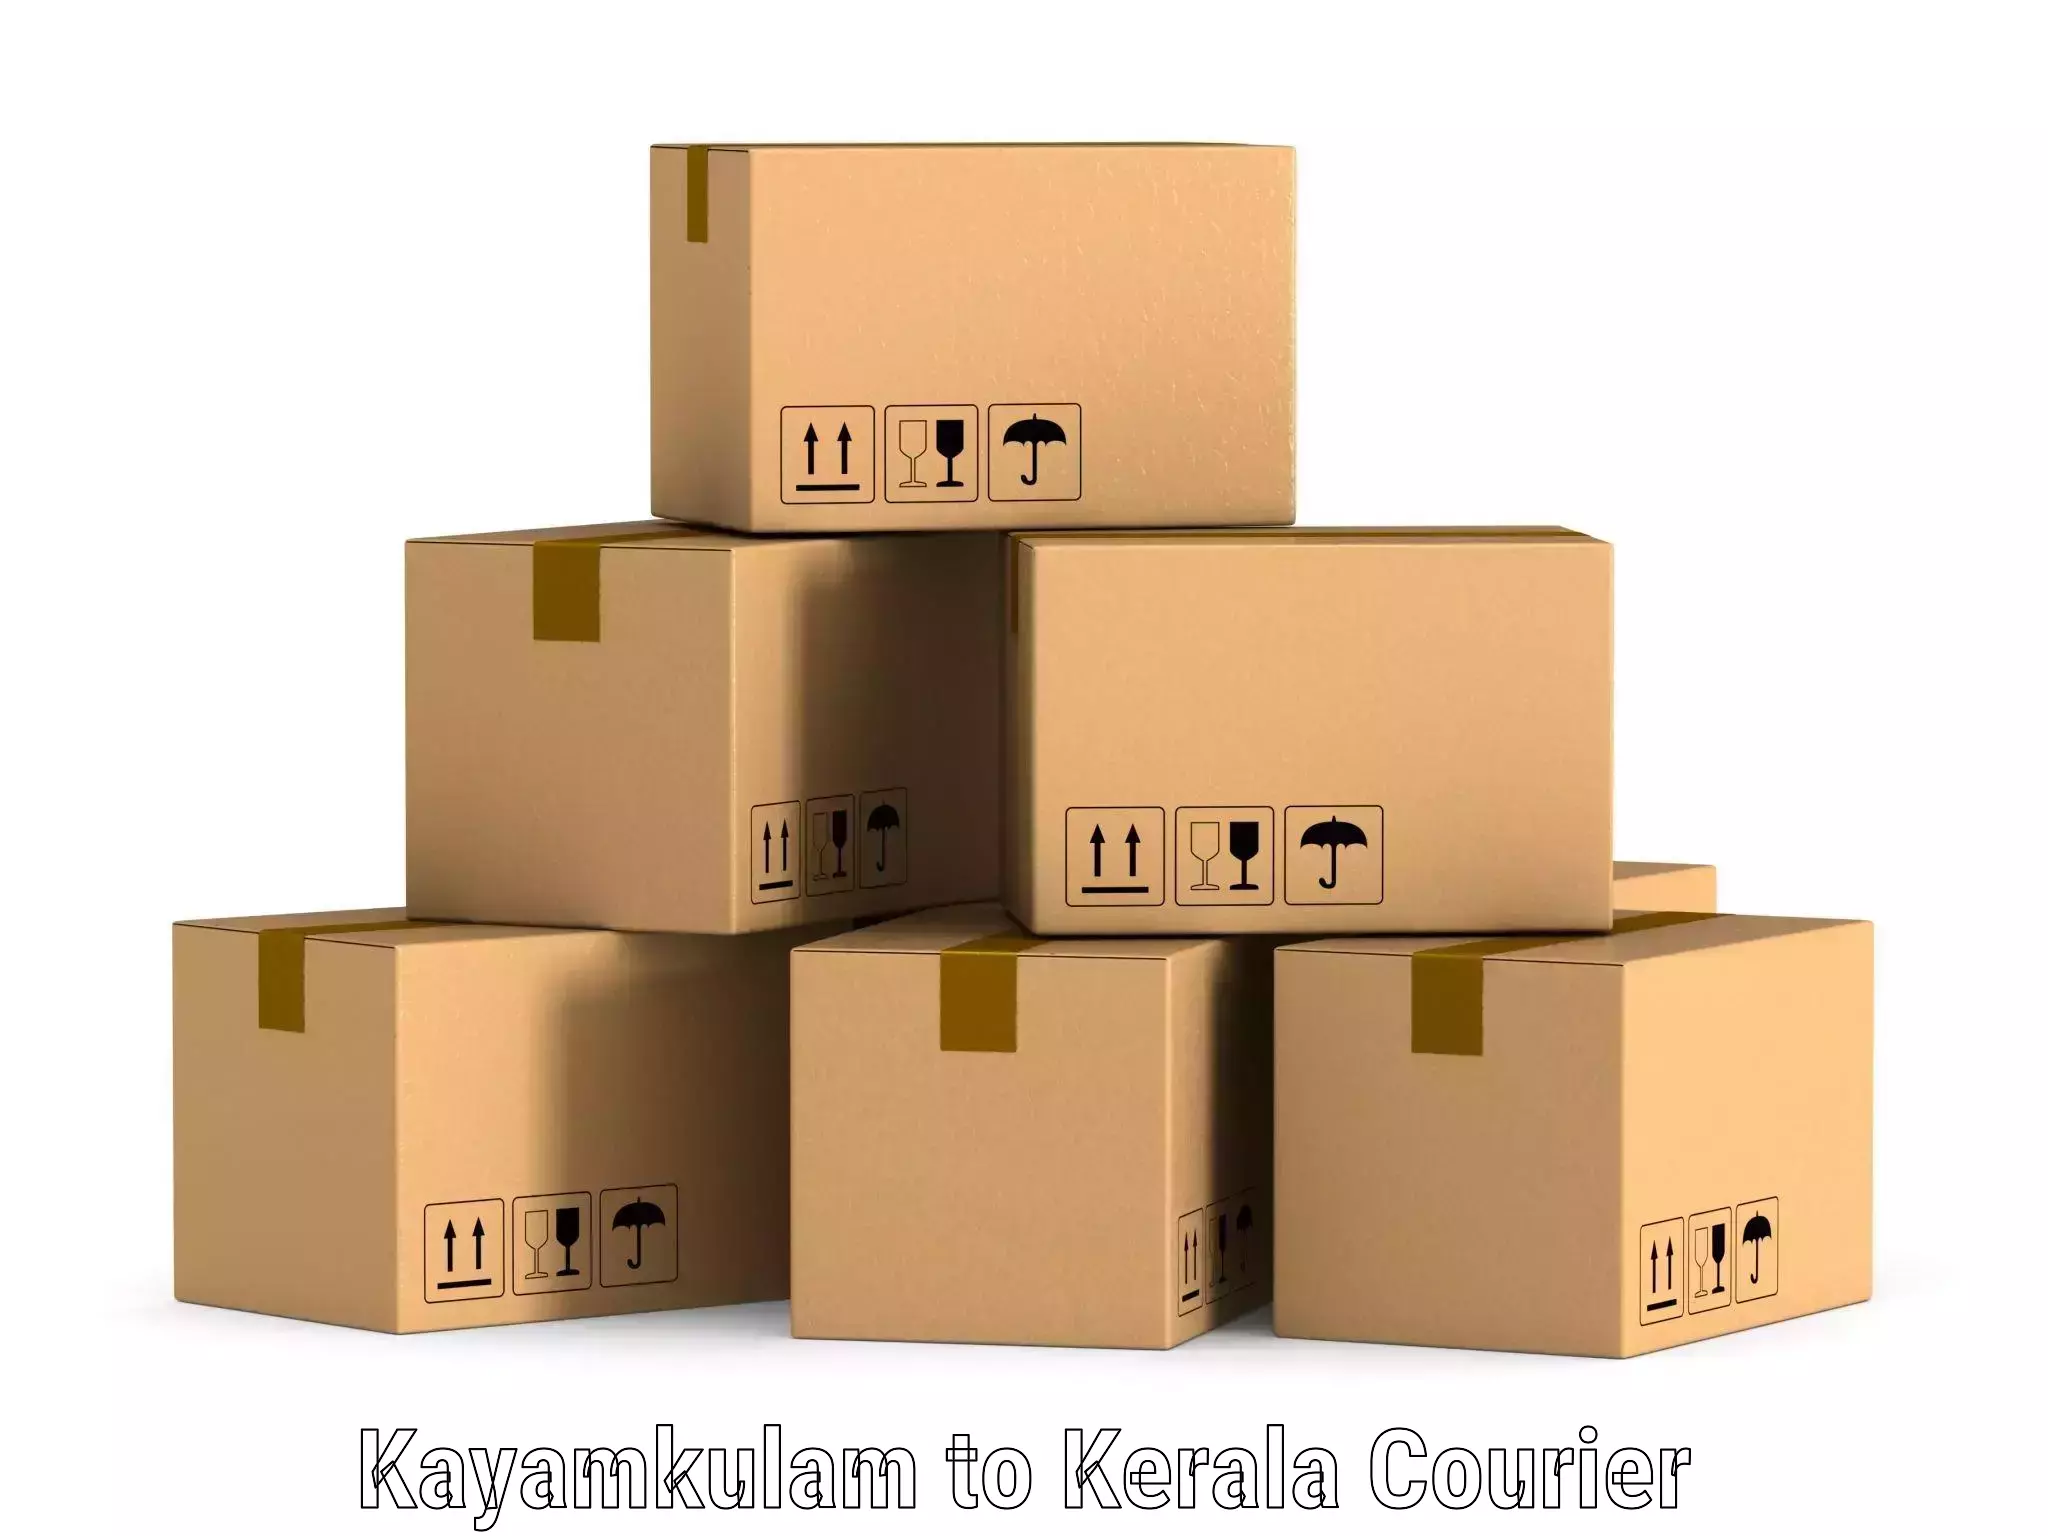 High-capacity shipping options Kayamkulam to Pala